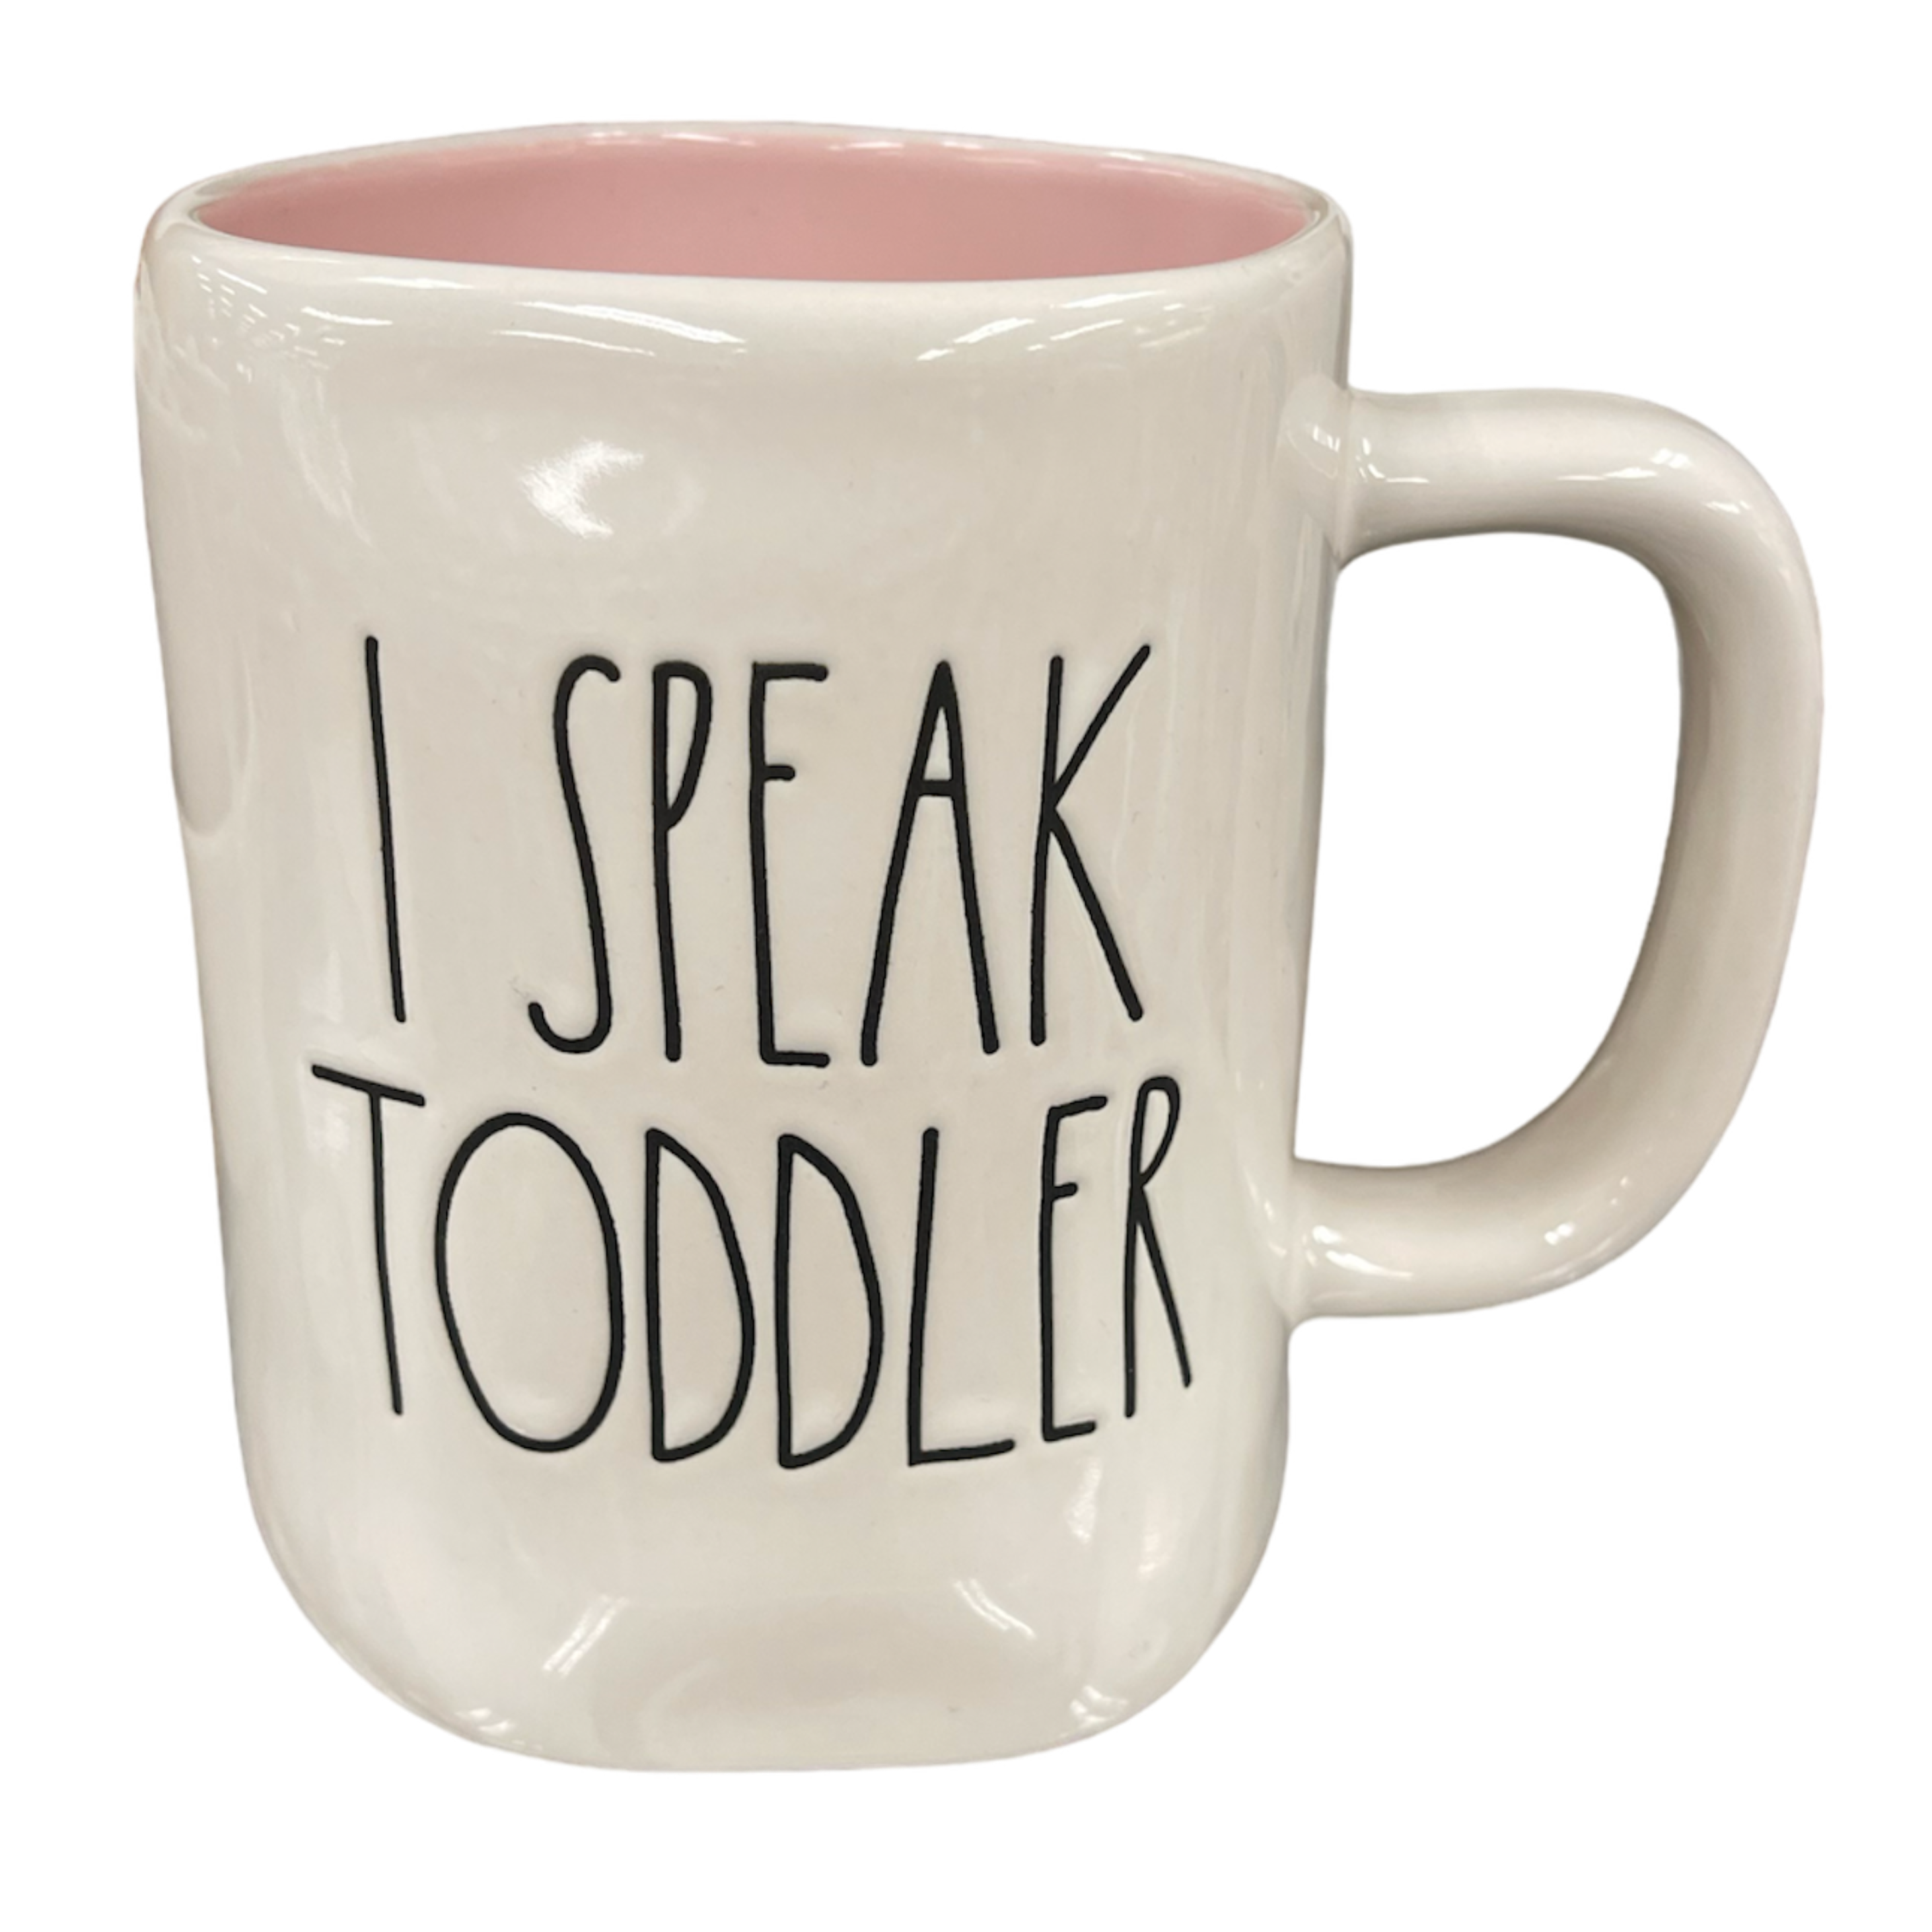 I Speak Fluent Toddler Daycare Teacher Provider Coffee Mug for